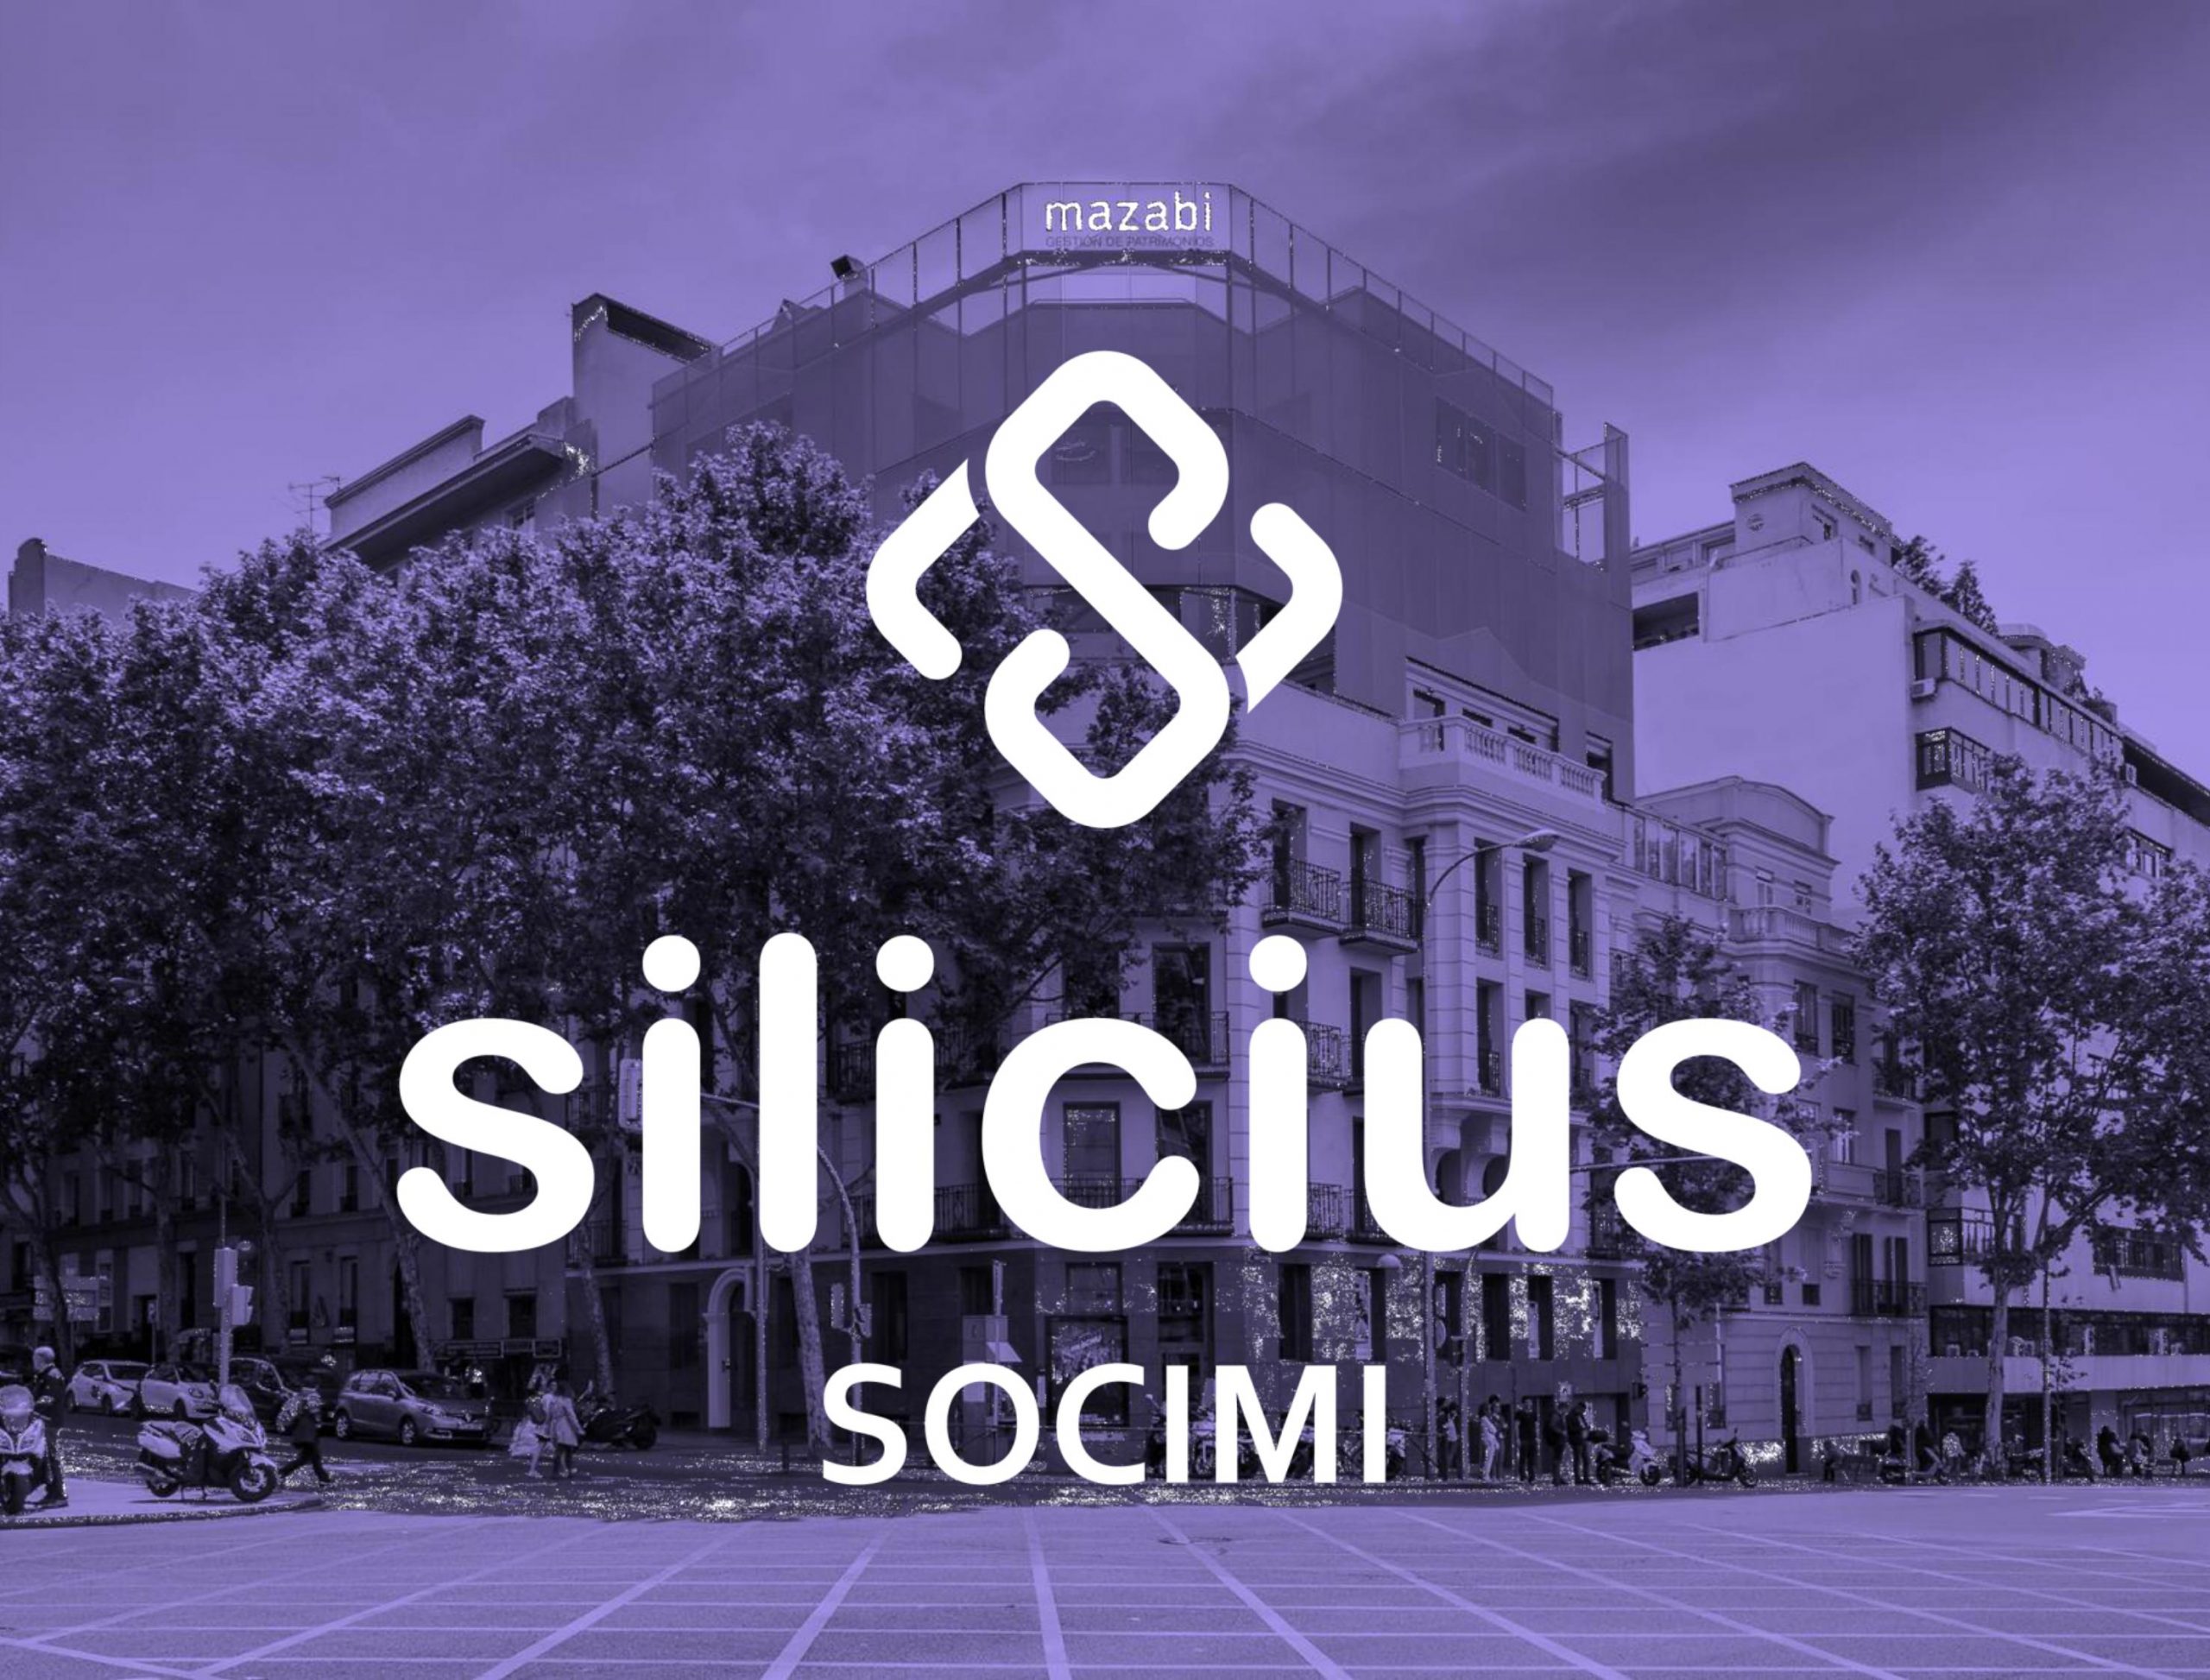 (c) Socimisilicius.com